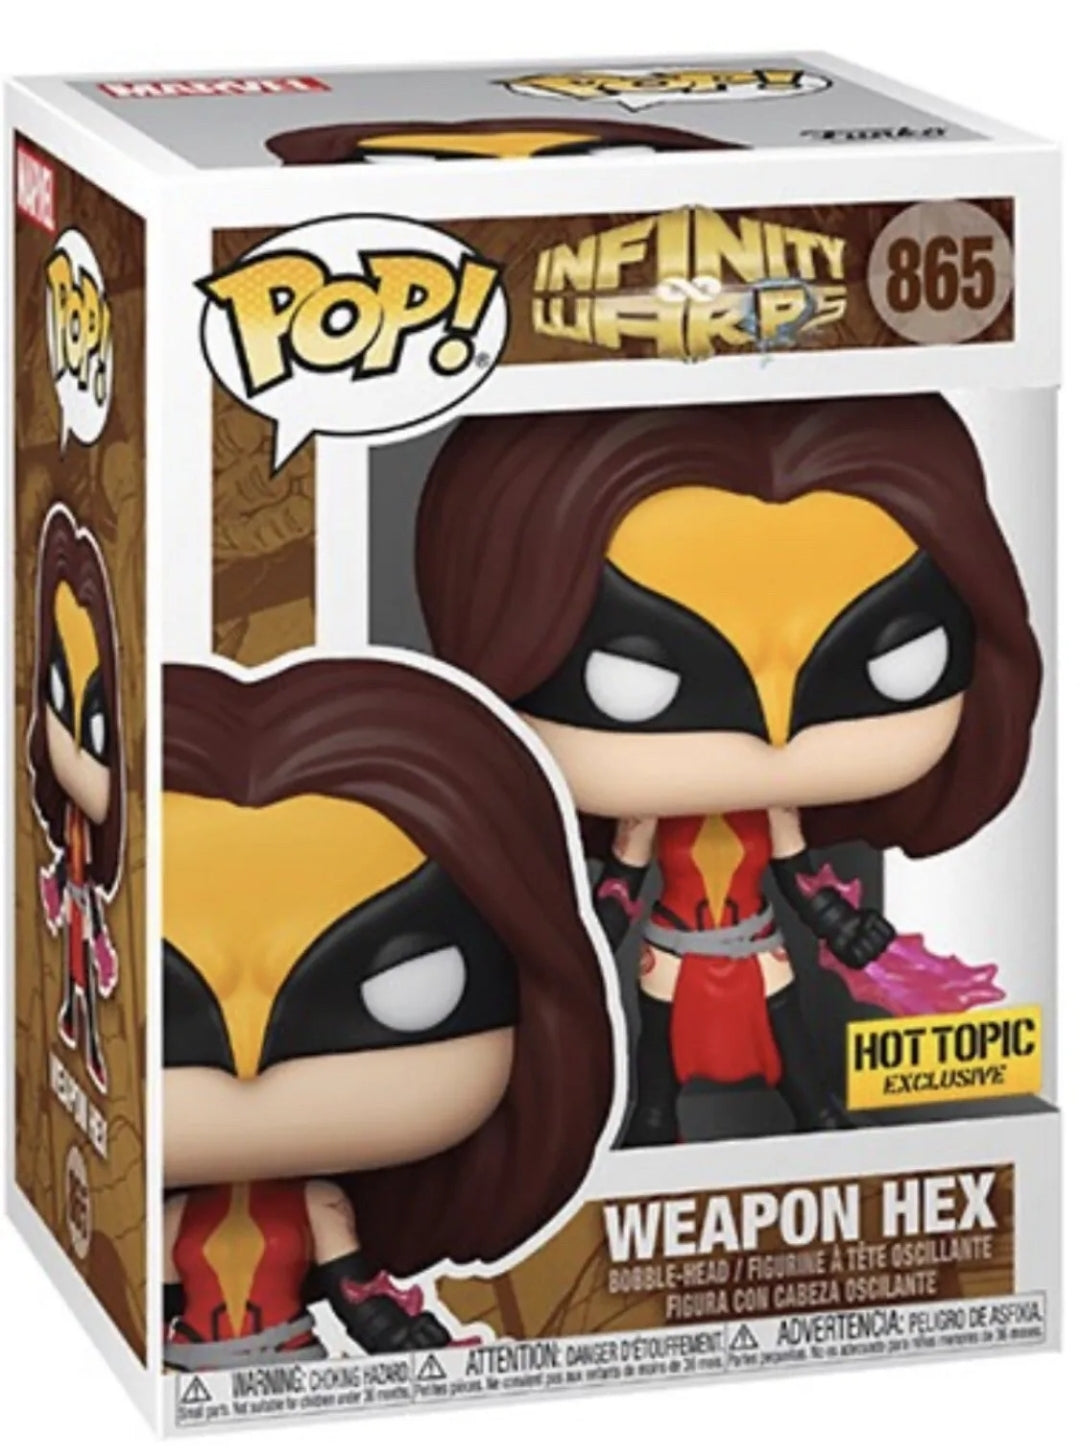 Funko POP: Infinity warps hot topic exclusive weapon hex #865